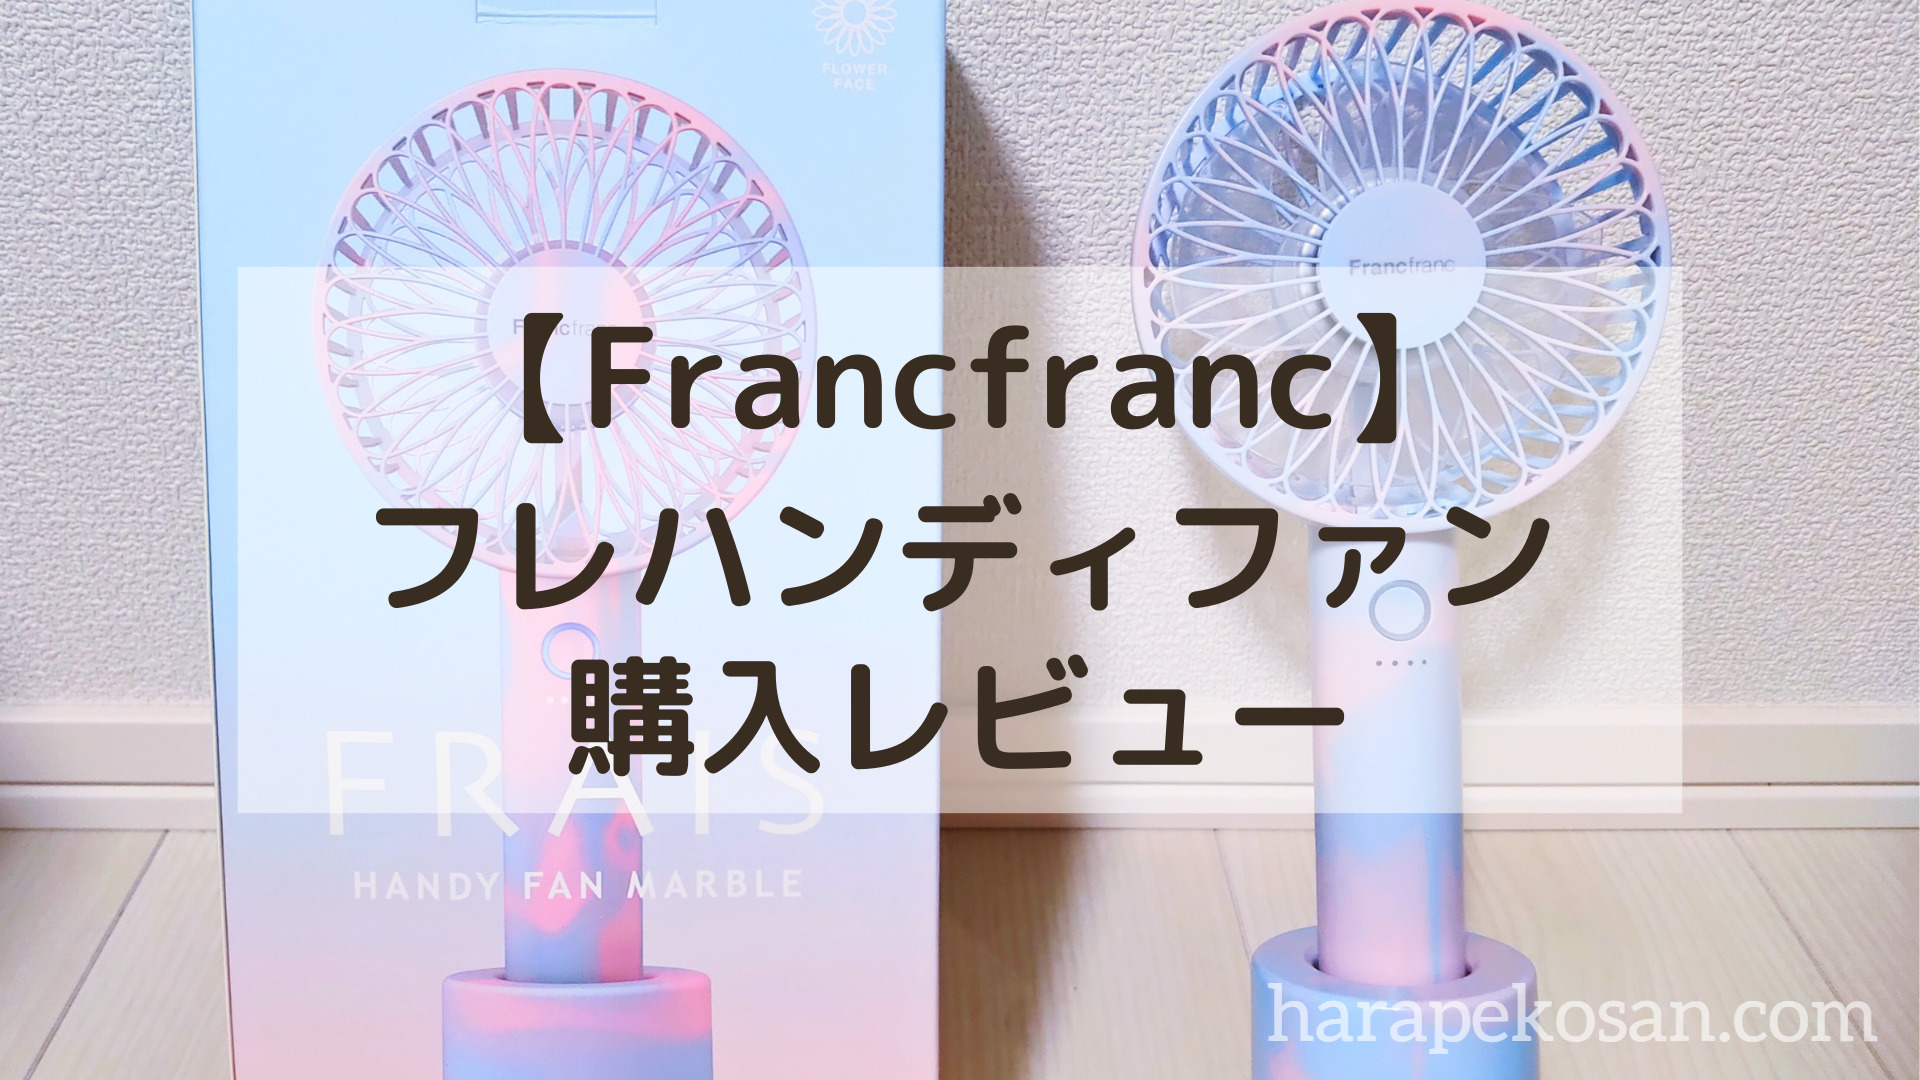 Francfranc フレハンディファンライト扇風機マーブル